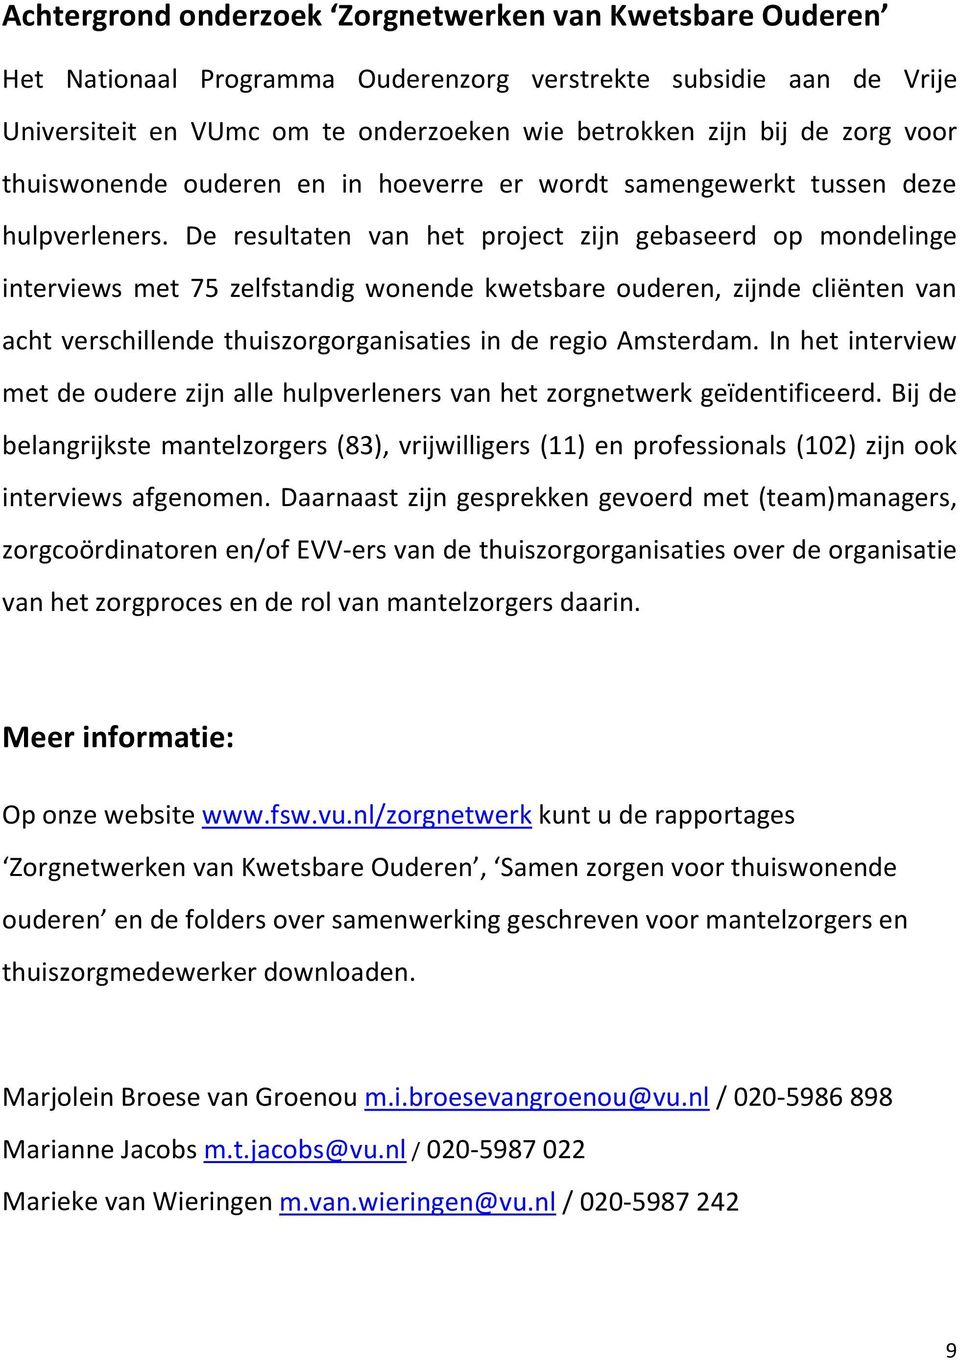 De resultaten van het project zijn gebaseerd op mondelinge interviews met 75 zelfstandig wonende kwetsbare ouderen, zijnde cliënten van acht verschillende thuiszorgorganisaties in de regio Amsterdam.